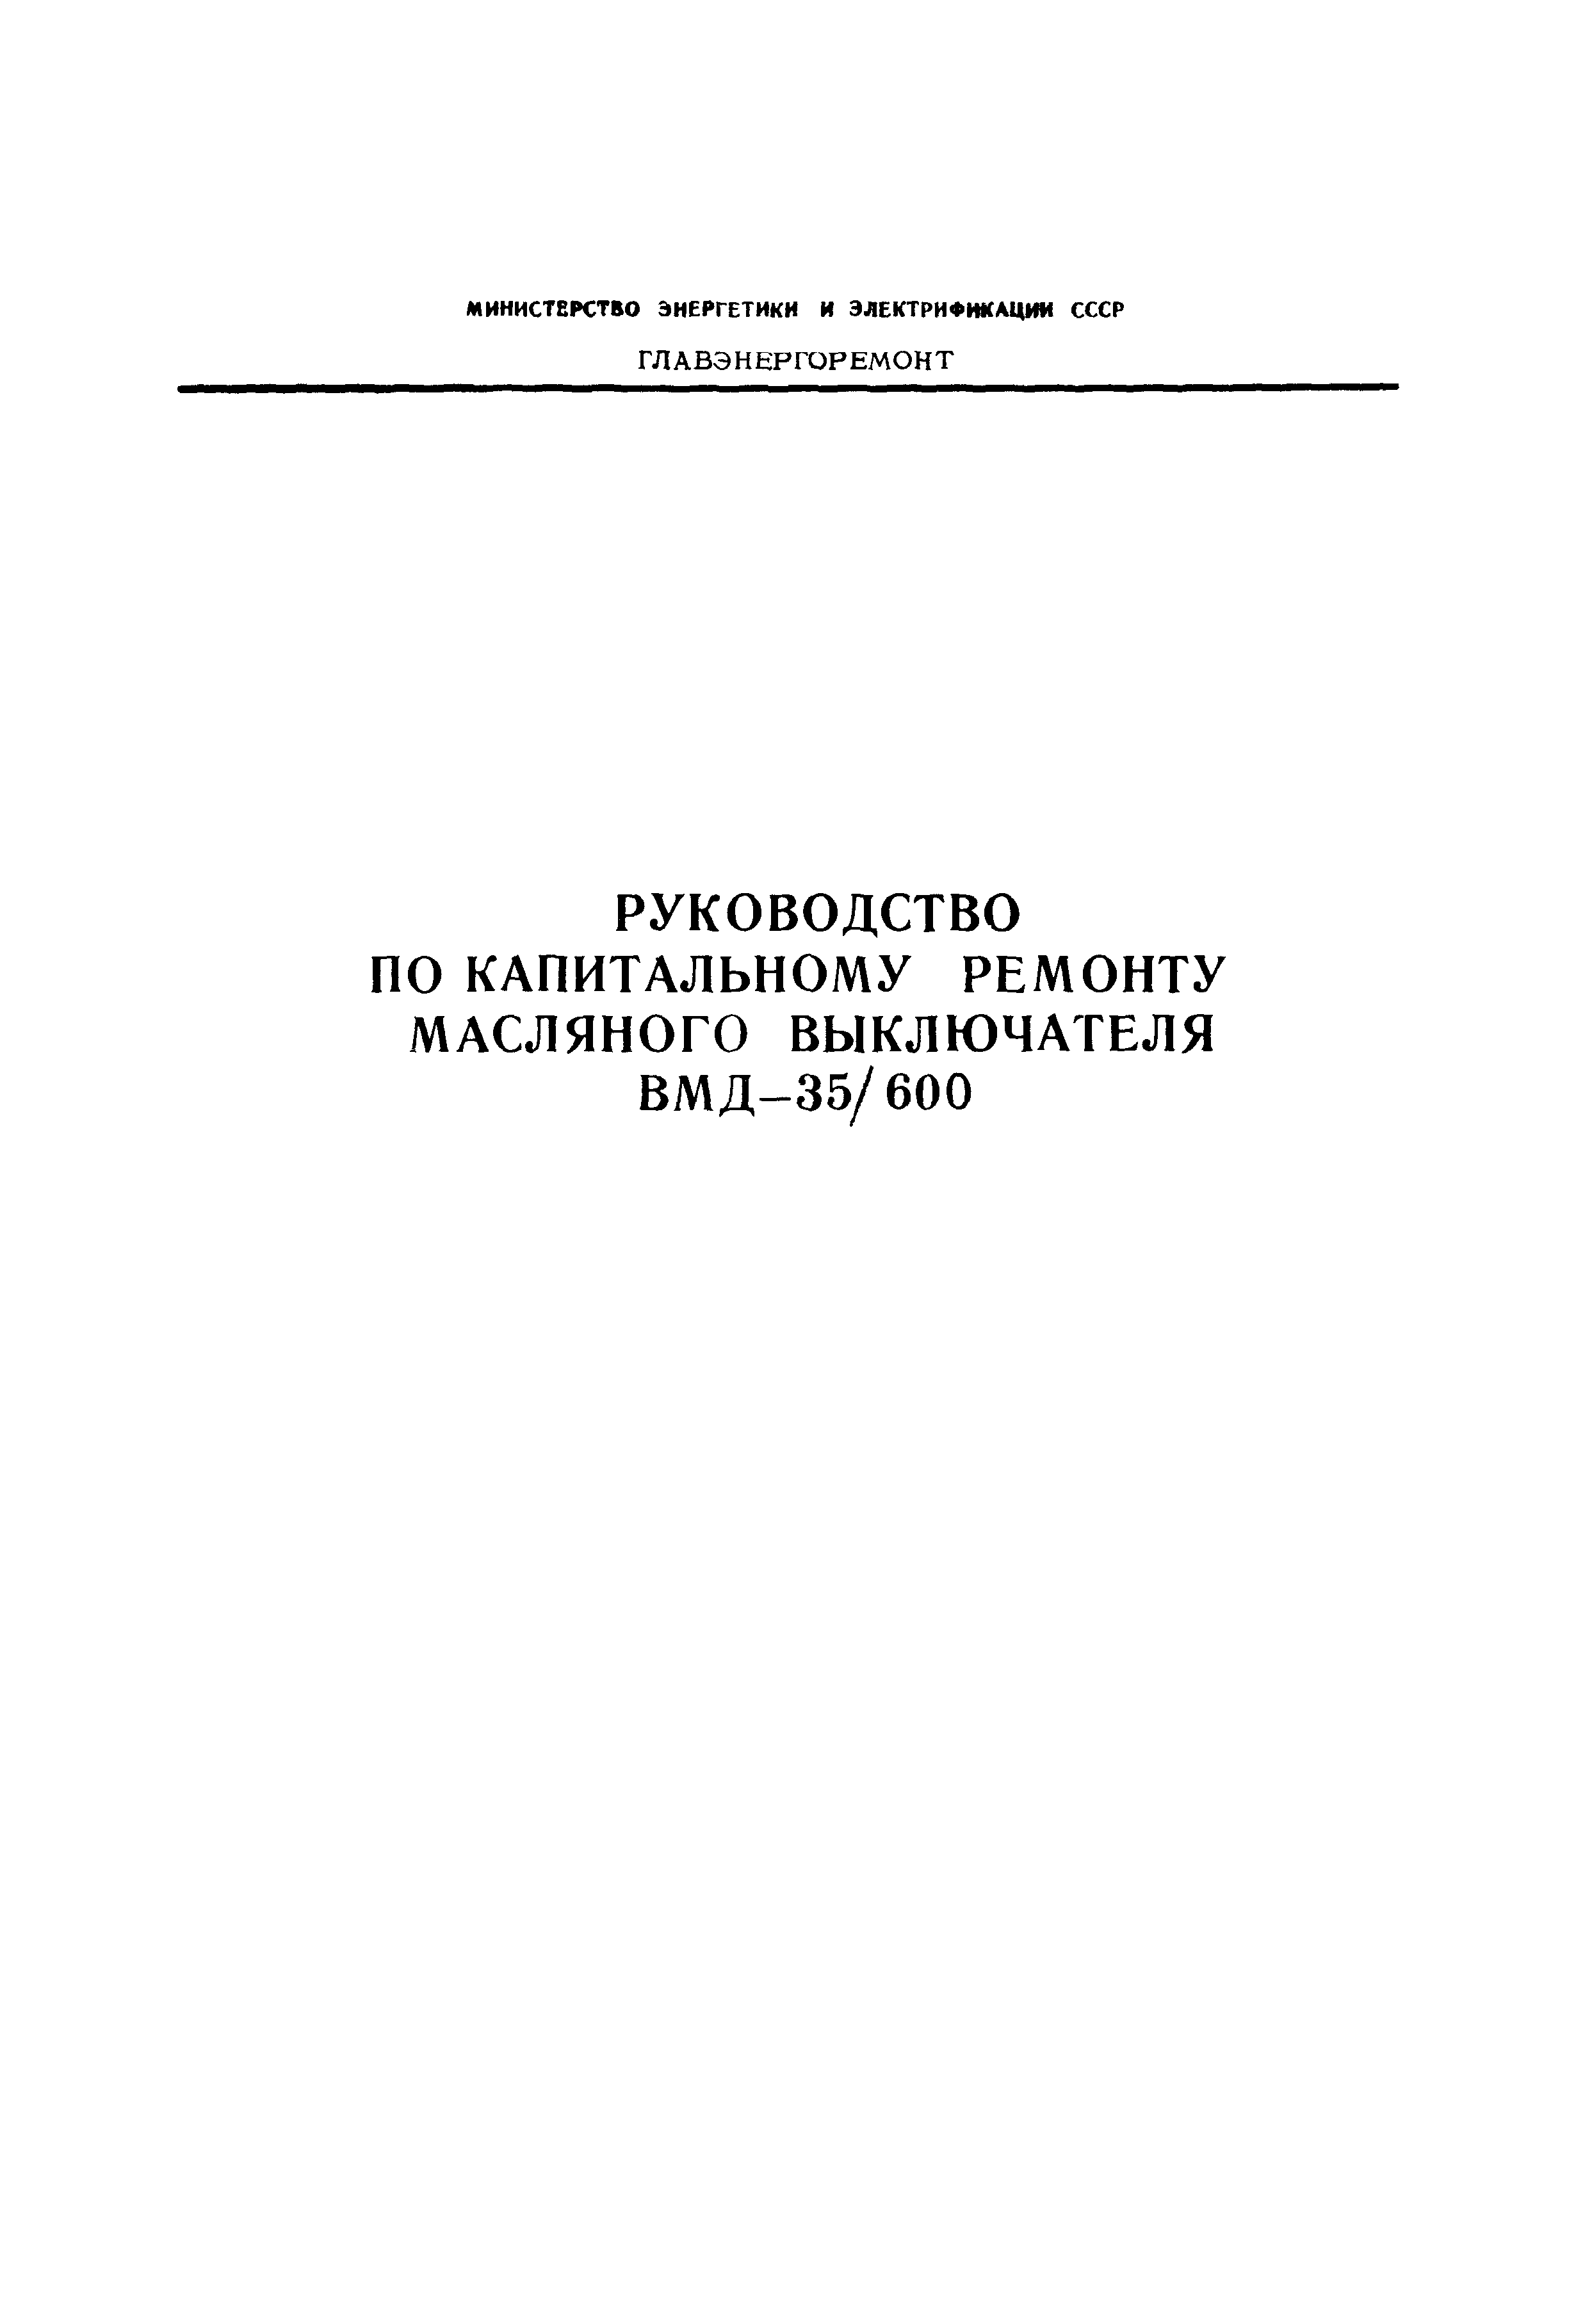 РД 34.47.602-75